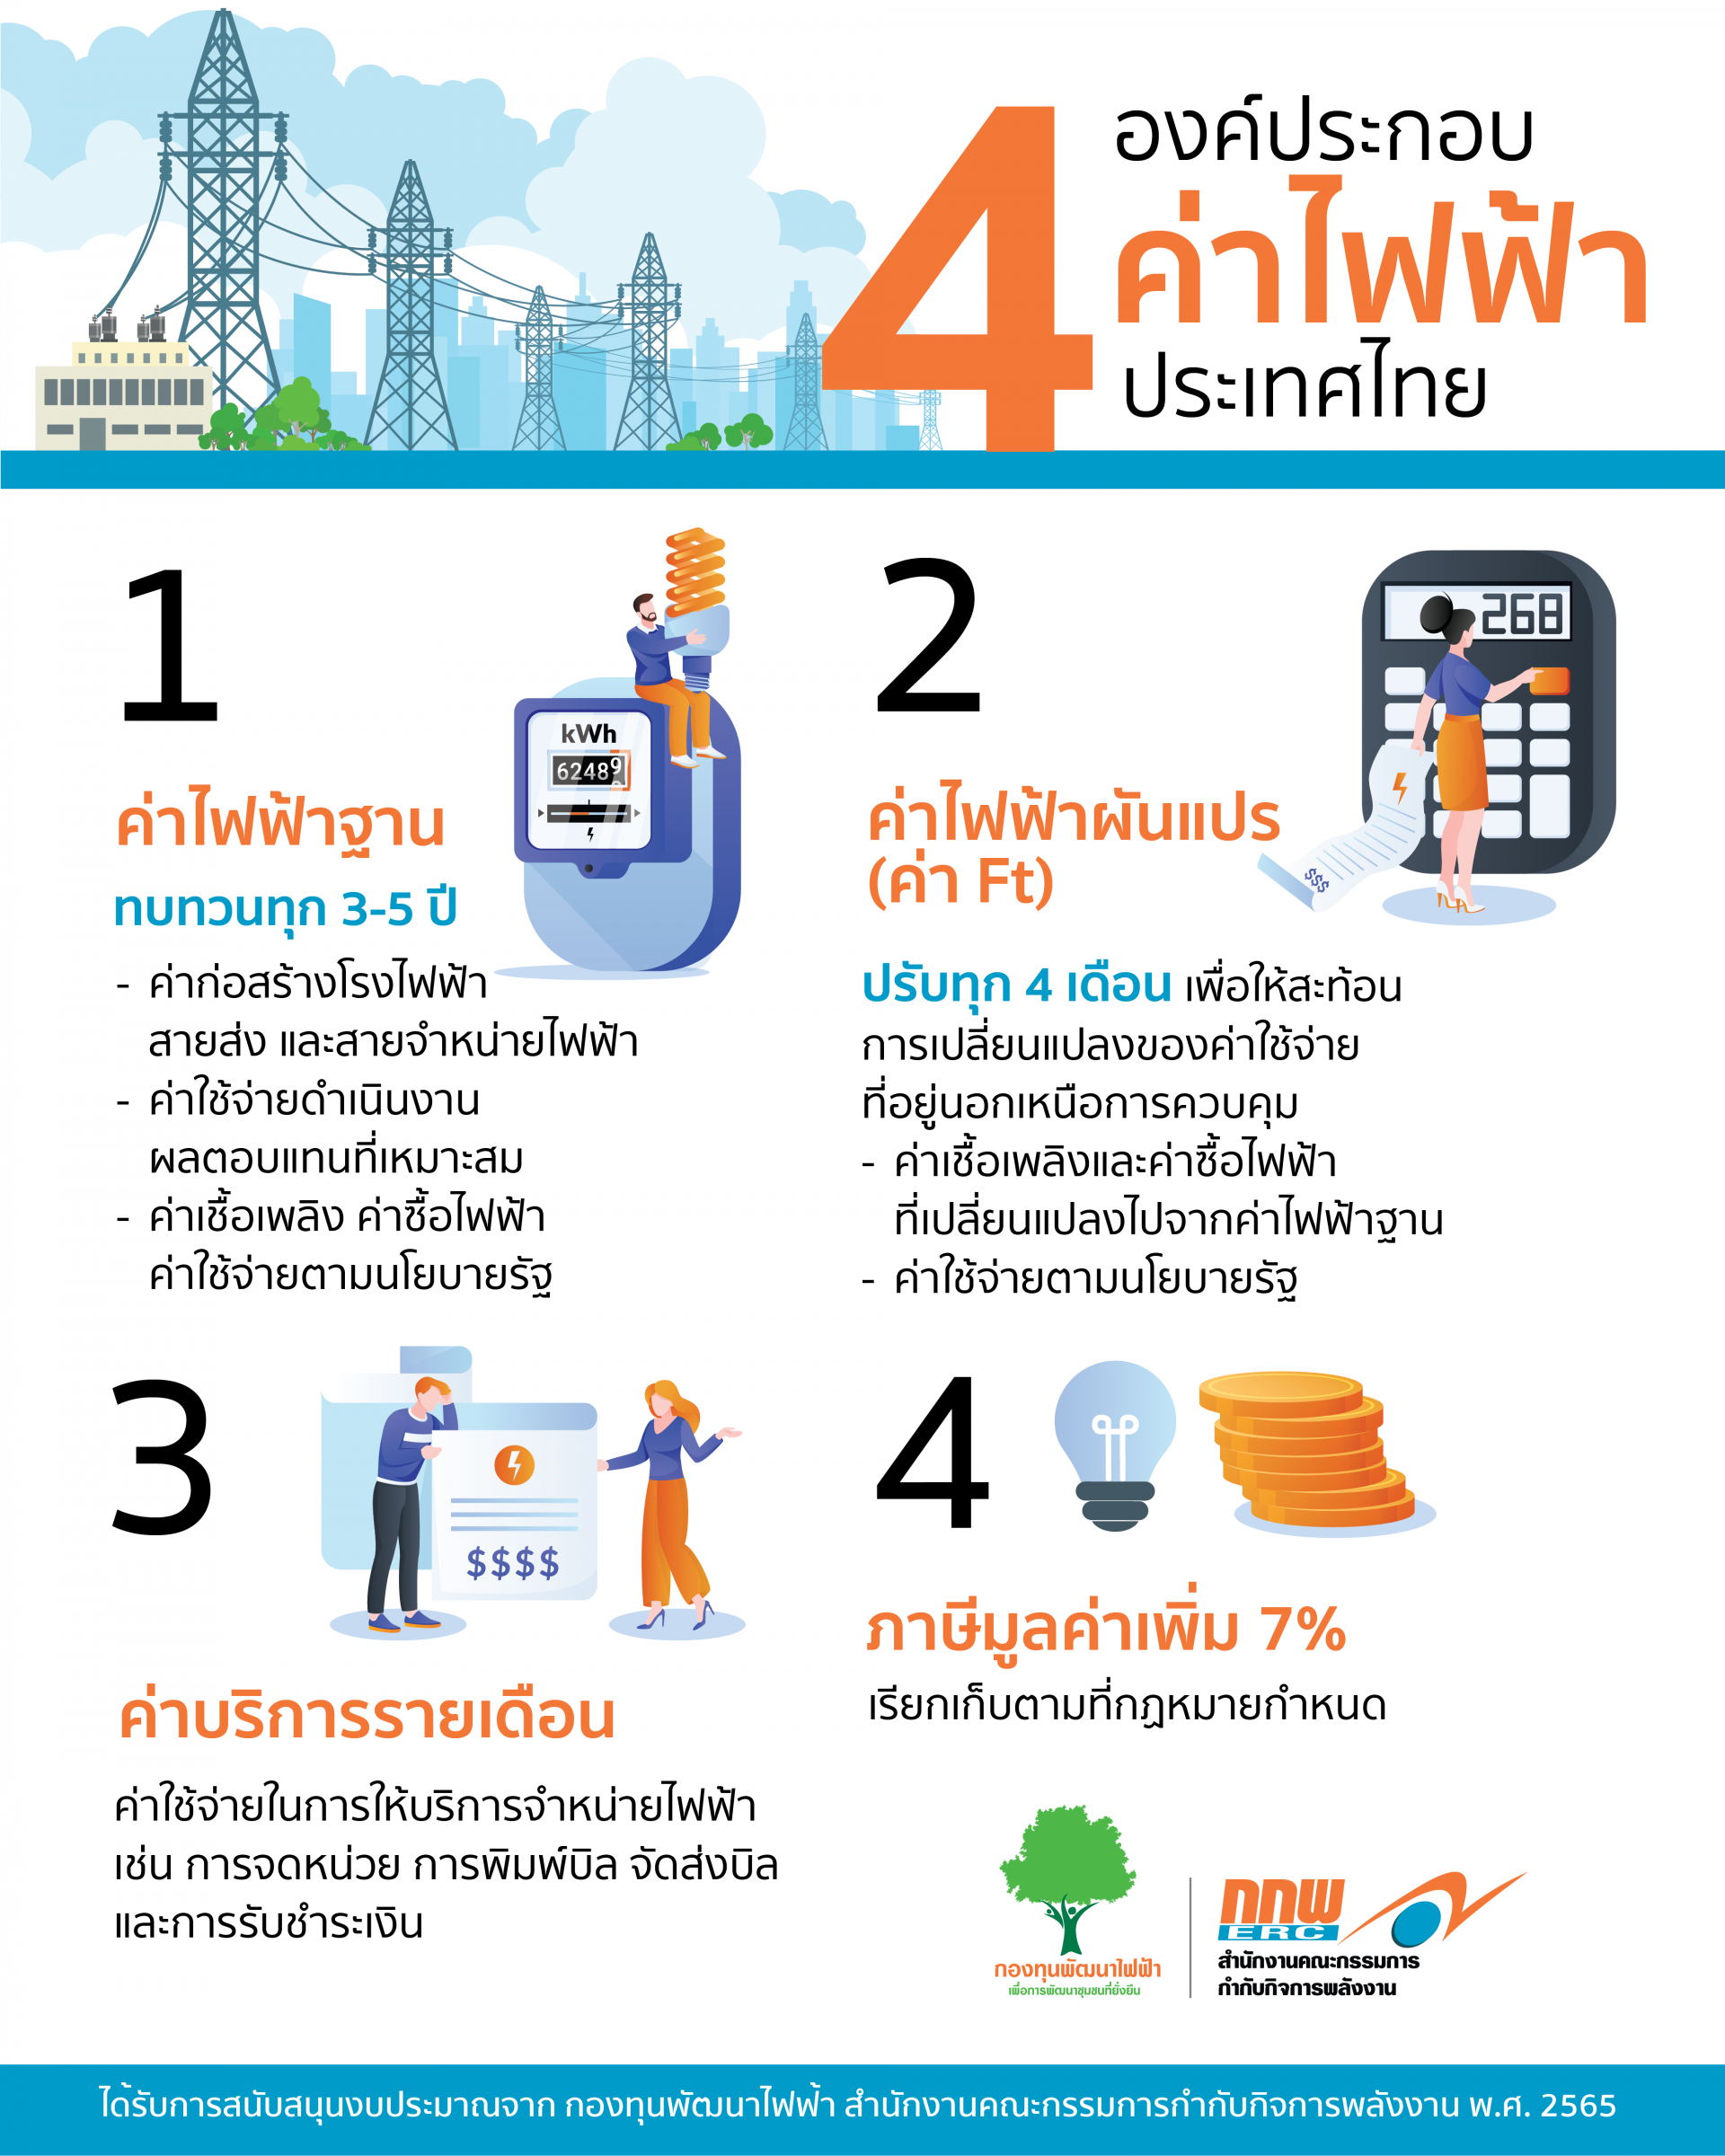 ค่าไฟฟ้าของไทย ประกอบด้วยอะไรบ้าง มารู้จักโครงสร้างค่าไฟฟ้ากัน #คณะกรรมการกำกับกิจการพลังงาน #กองทุนพัฒนาไฟฟ้า